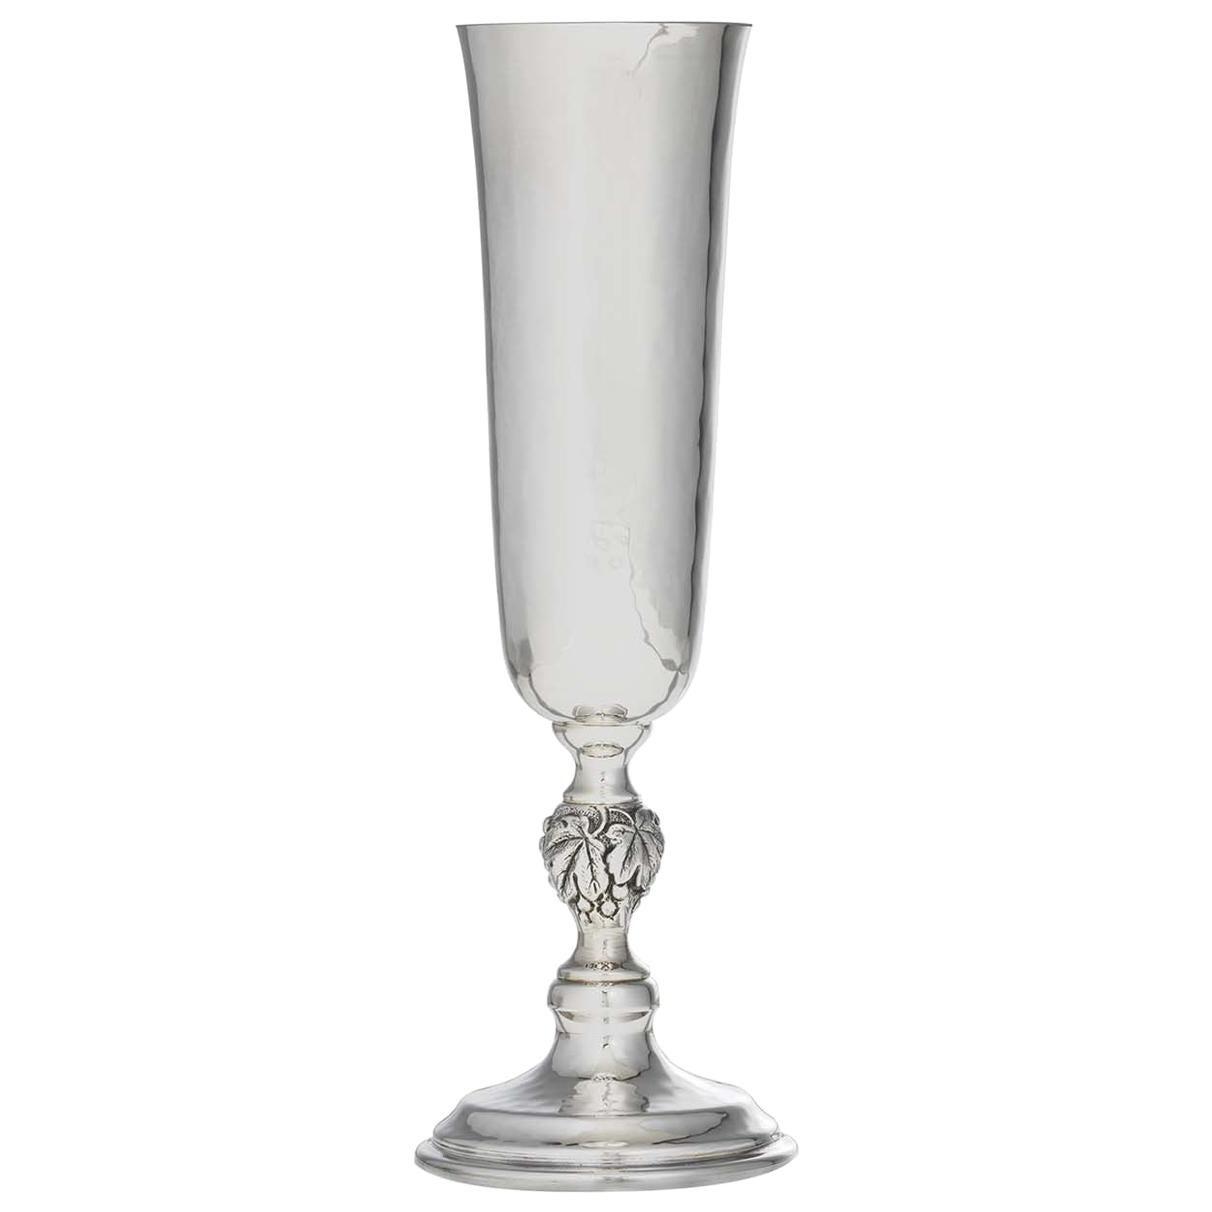 Renaissance Renaissance-Flötenglas